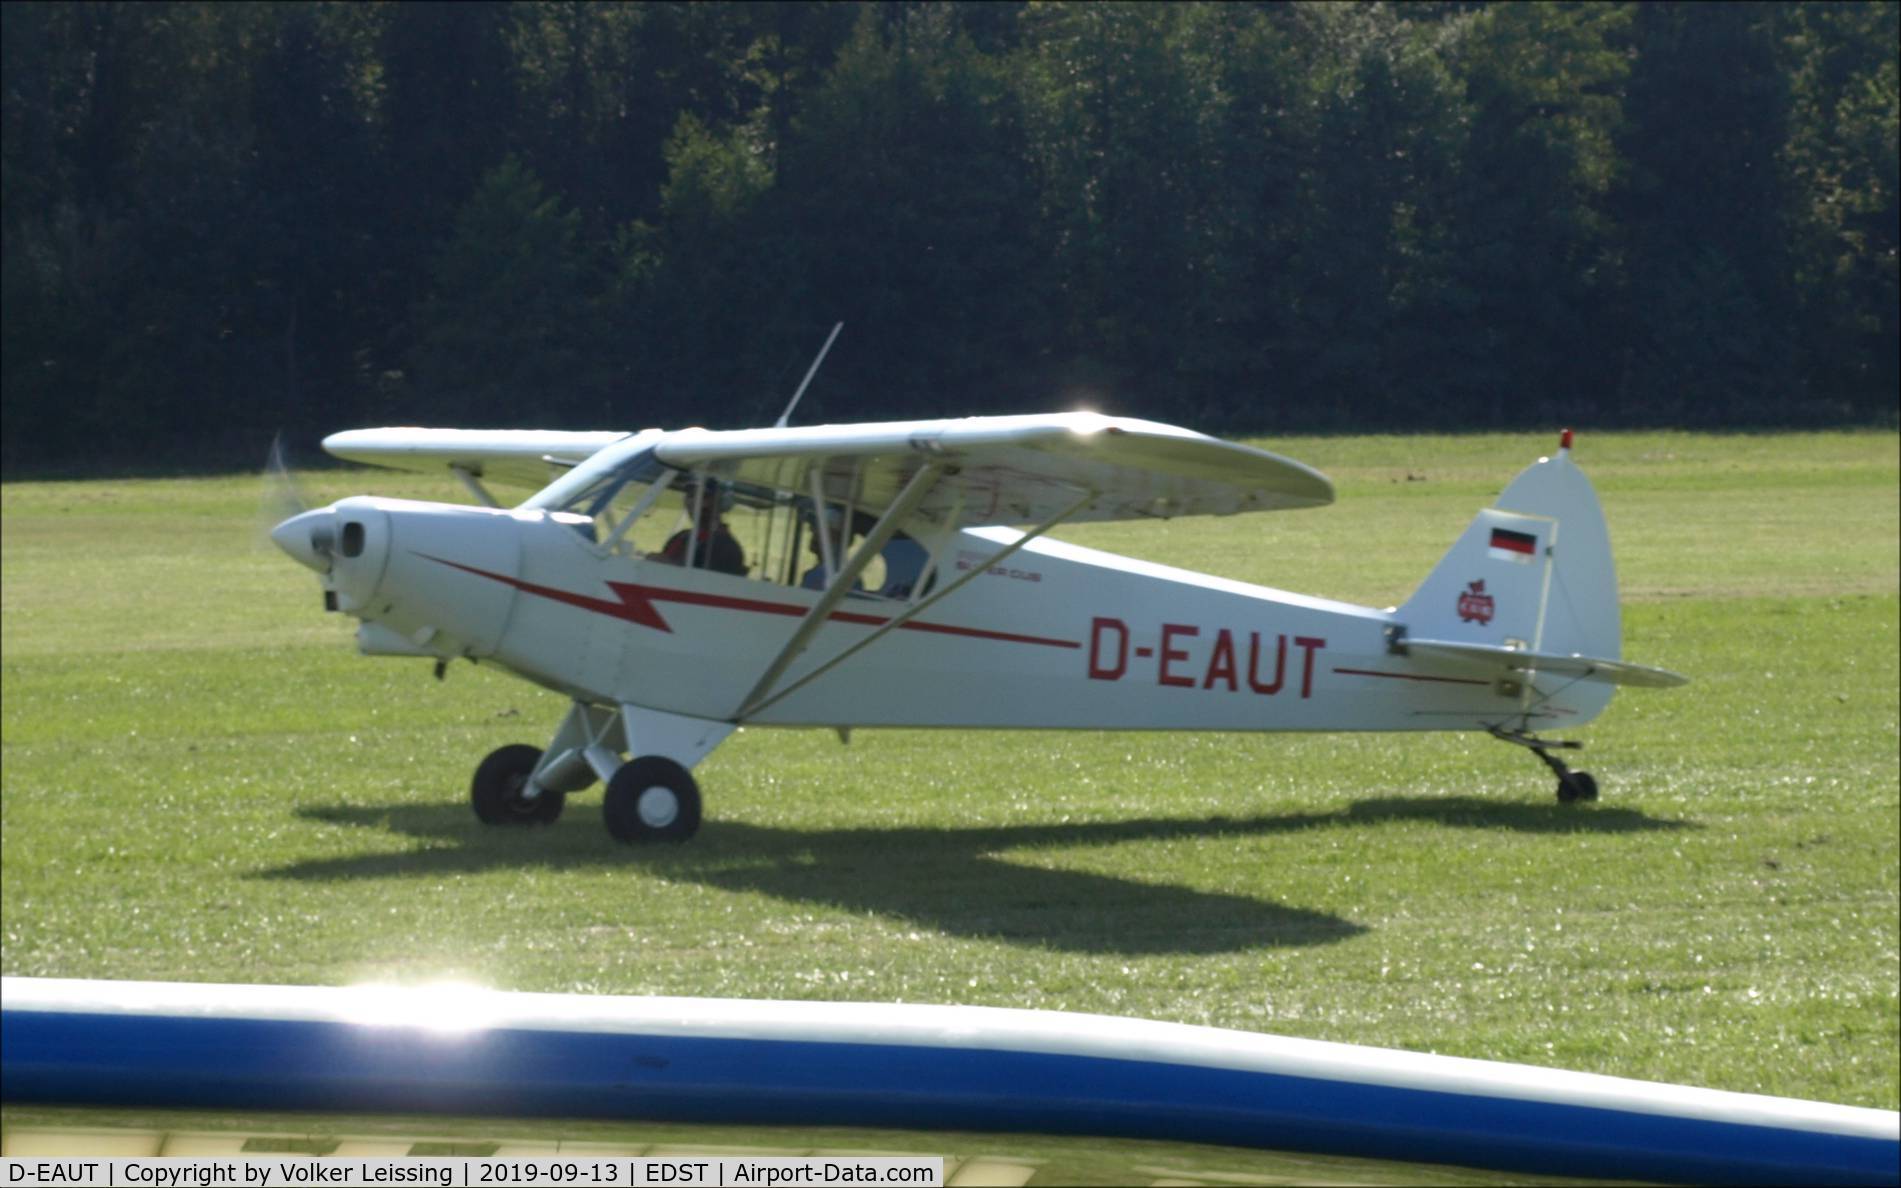 D-EAUT, 1975 Piper PA-18-95 Super Cub C/N 18-7909190, taxi ro rwy